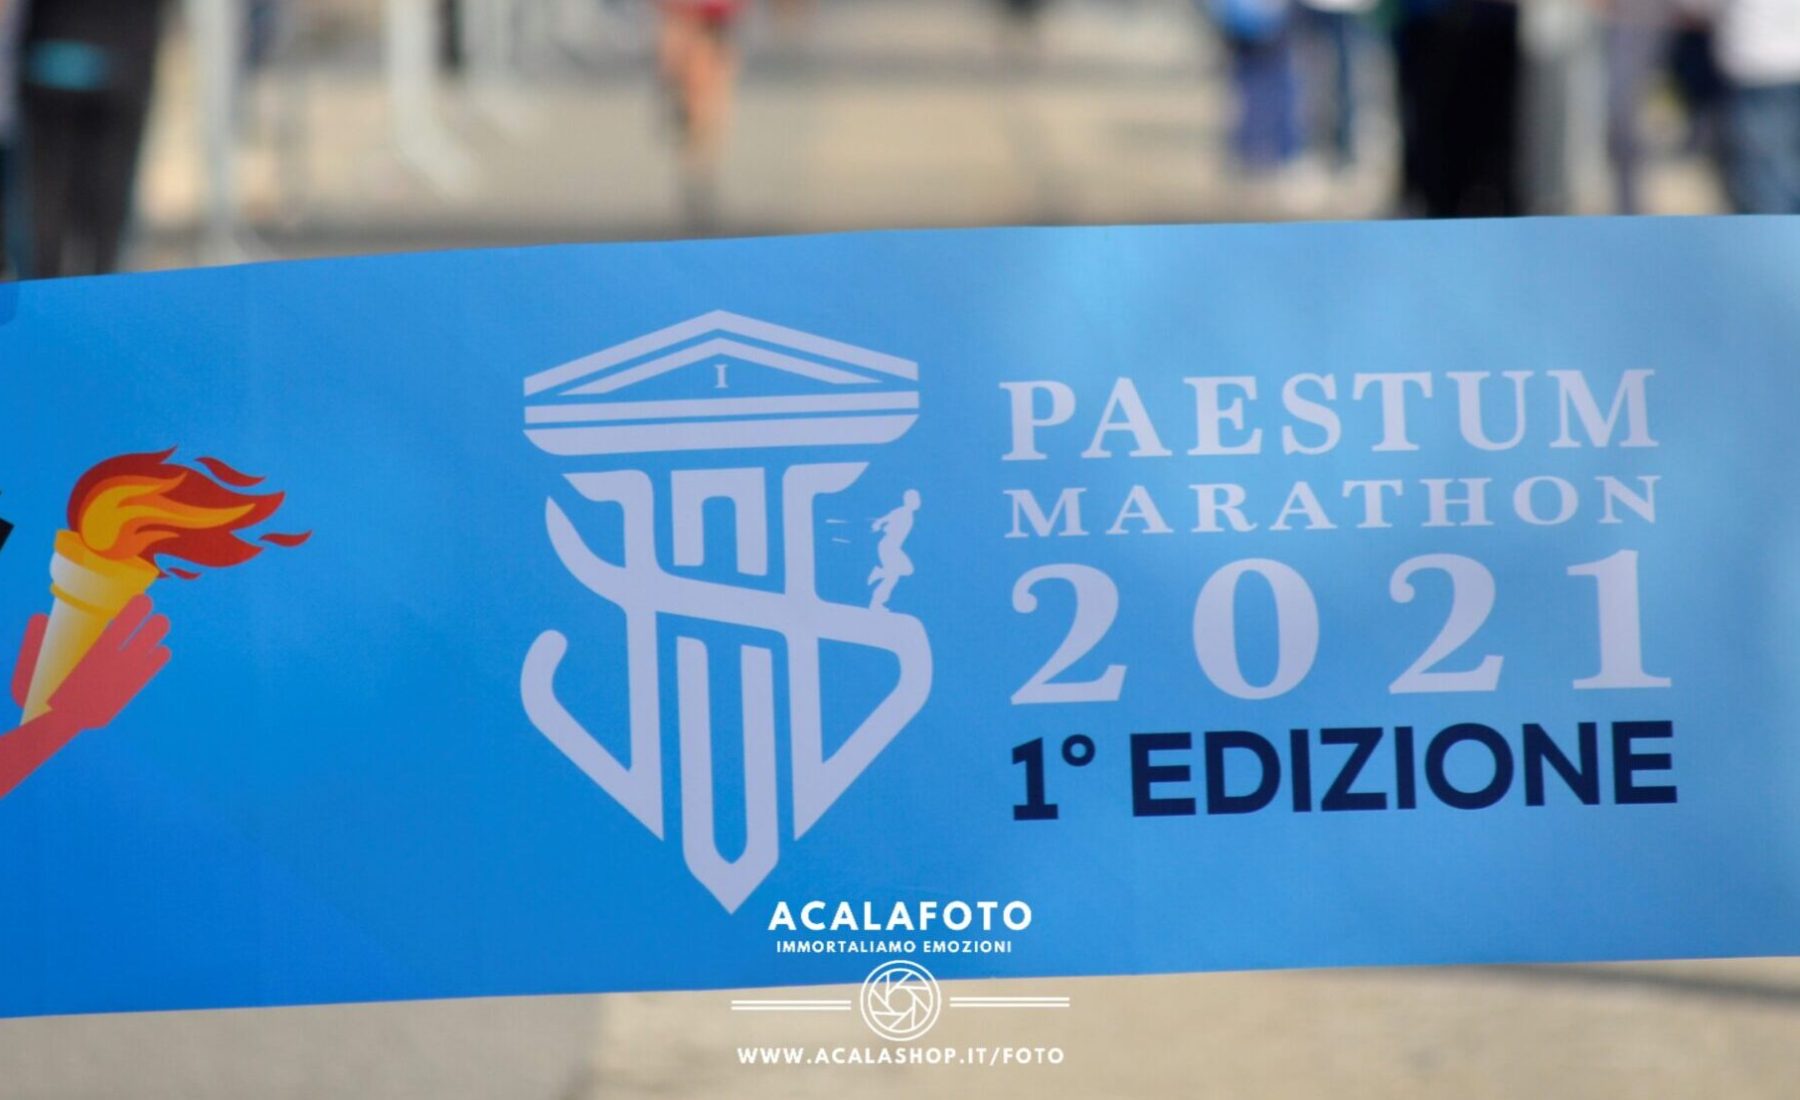 Paestum Marathon 2021- la maratona dei Templi